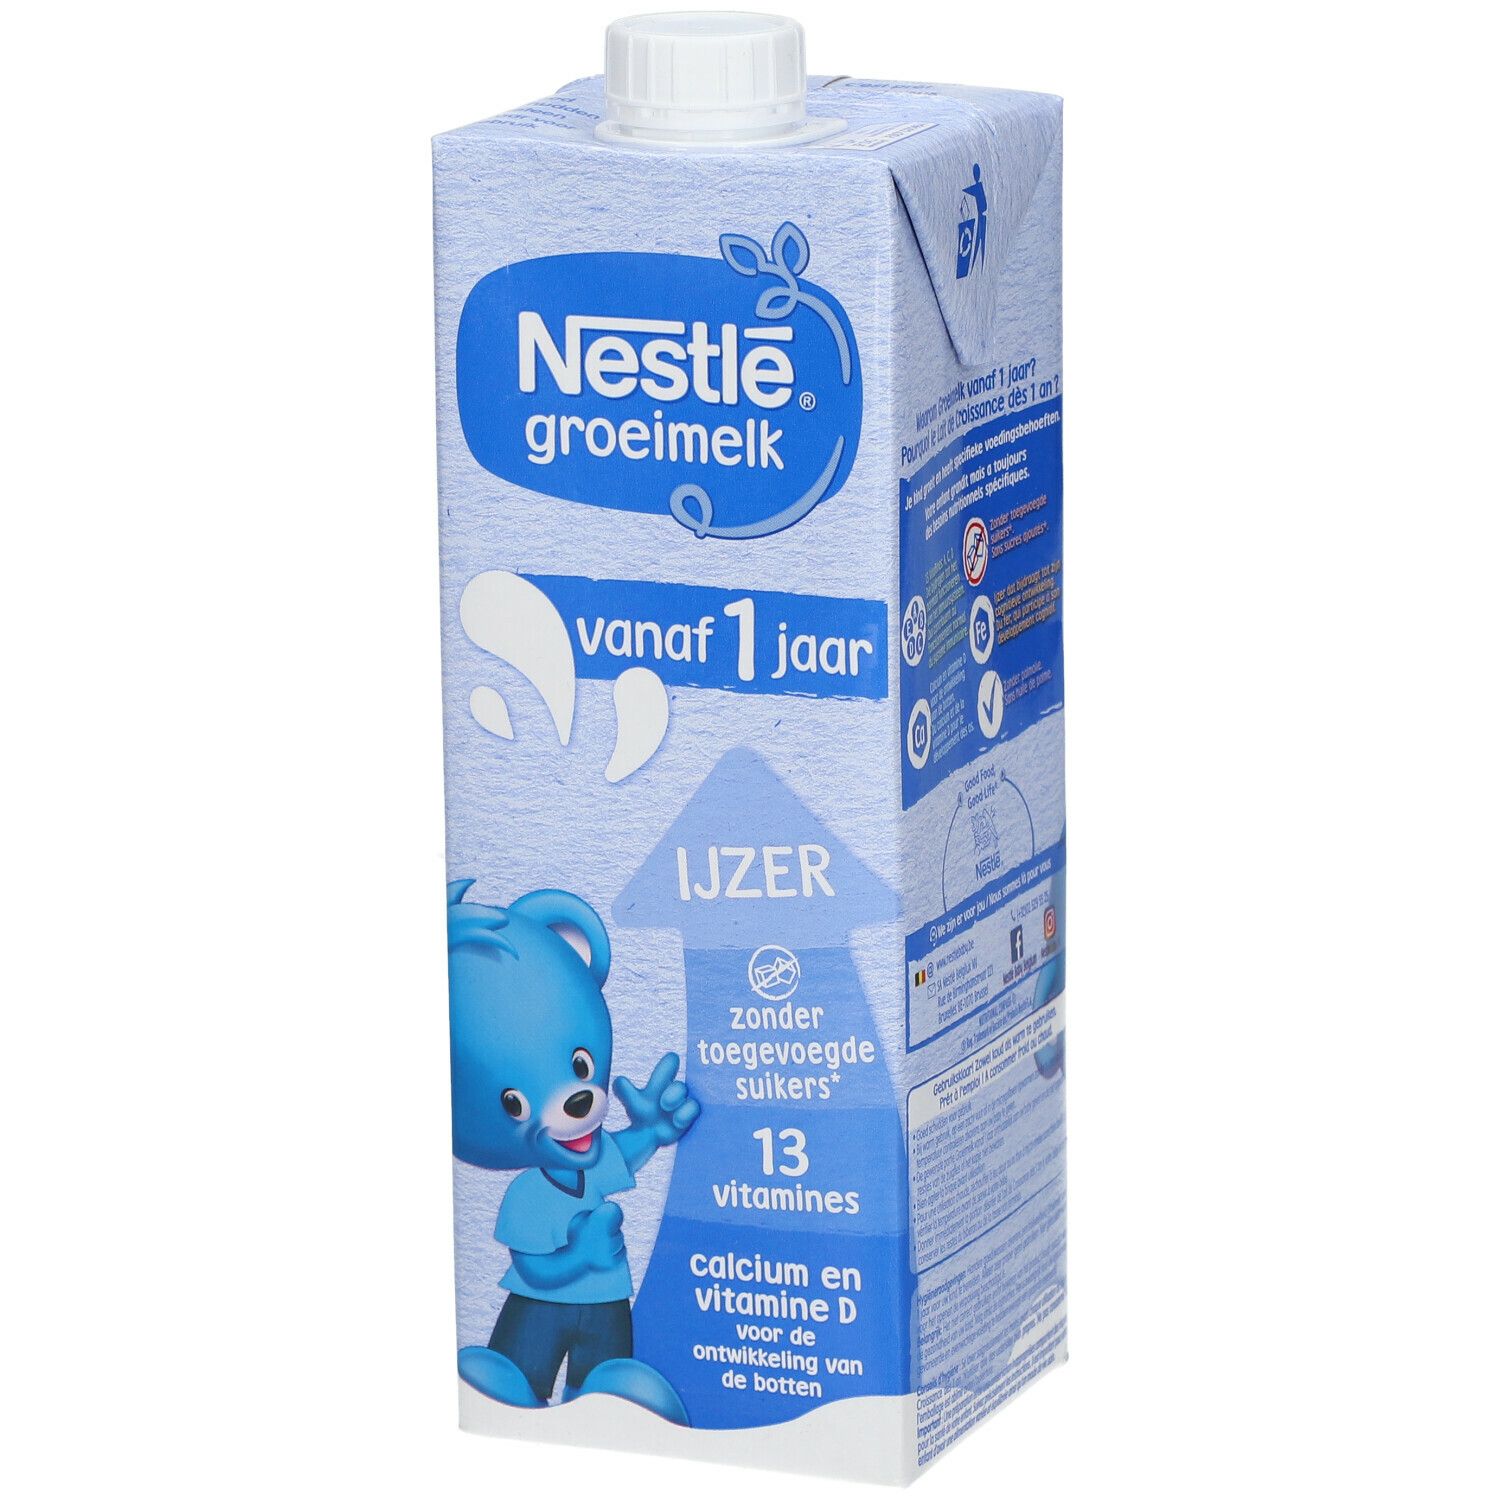 Nestlé® Lait de Croissance 1+